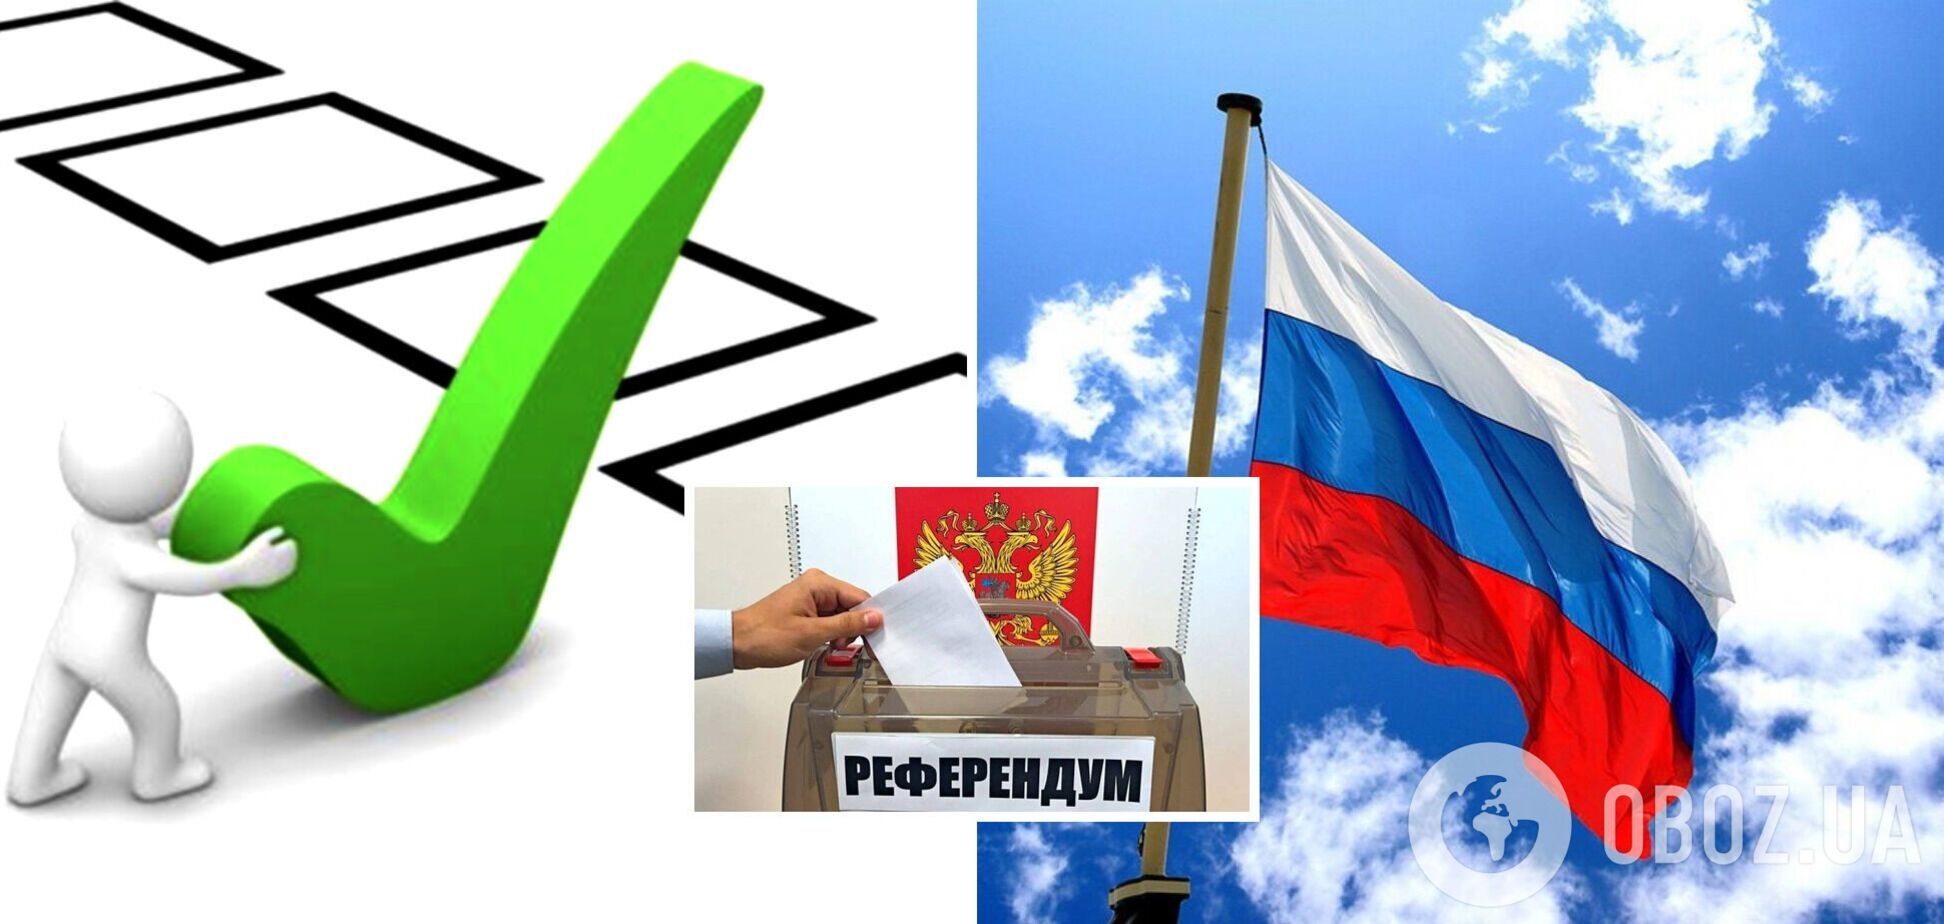 Процесс развала пошел? Пять регионов в РФ проведут онлайн-референдумы по независимости